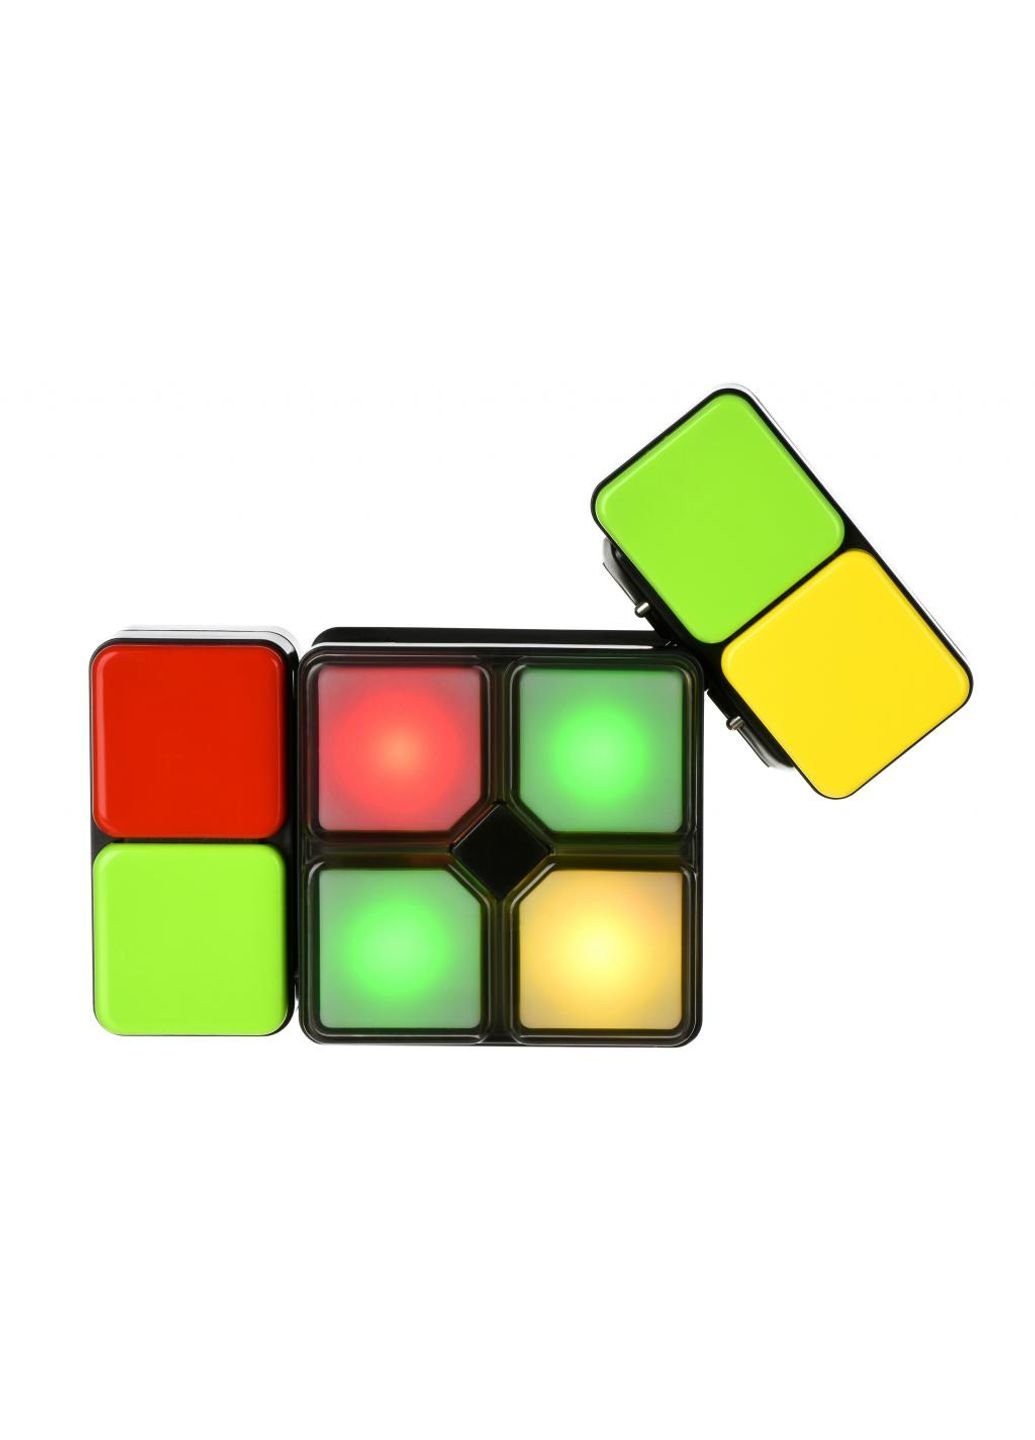 Настольная игра (OY-CUBE-02) Same Toy iq electric cube (198484544)